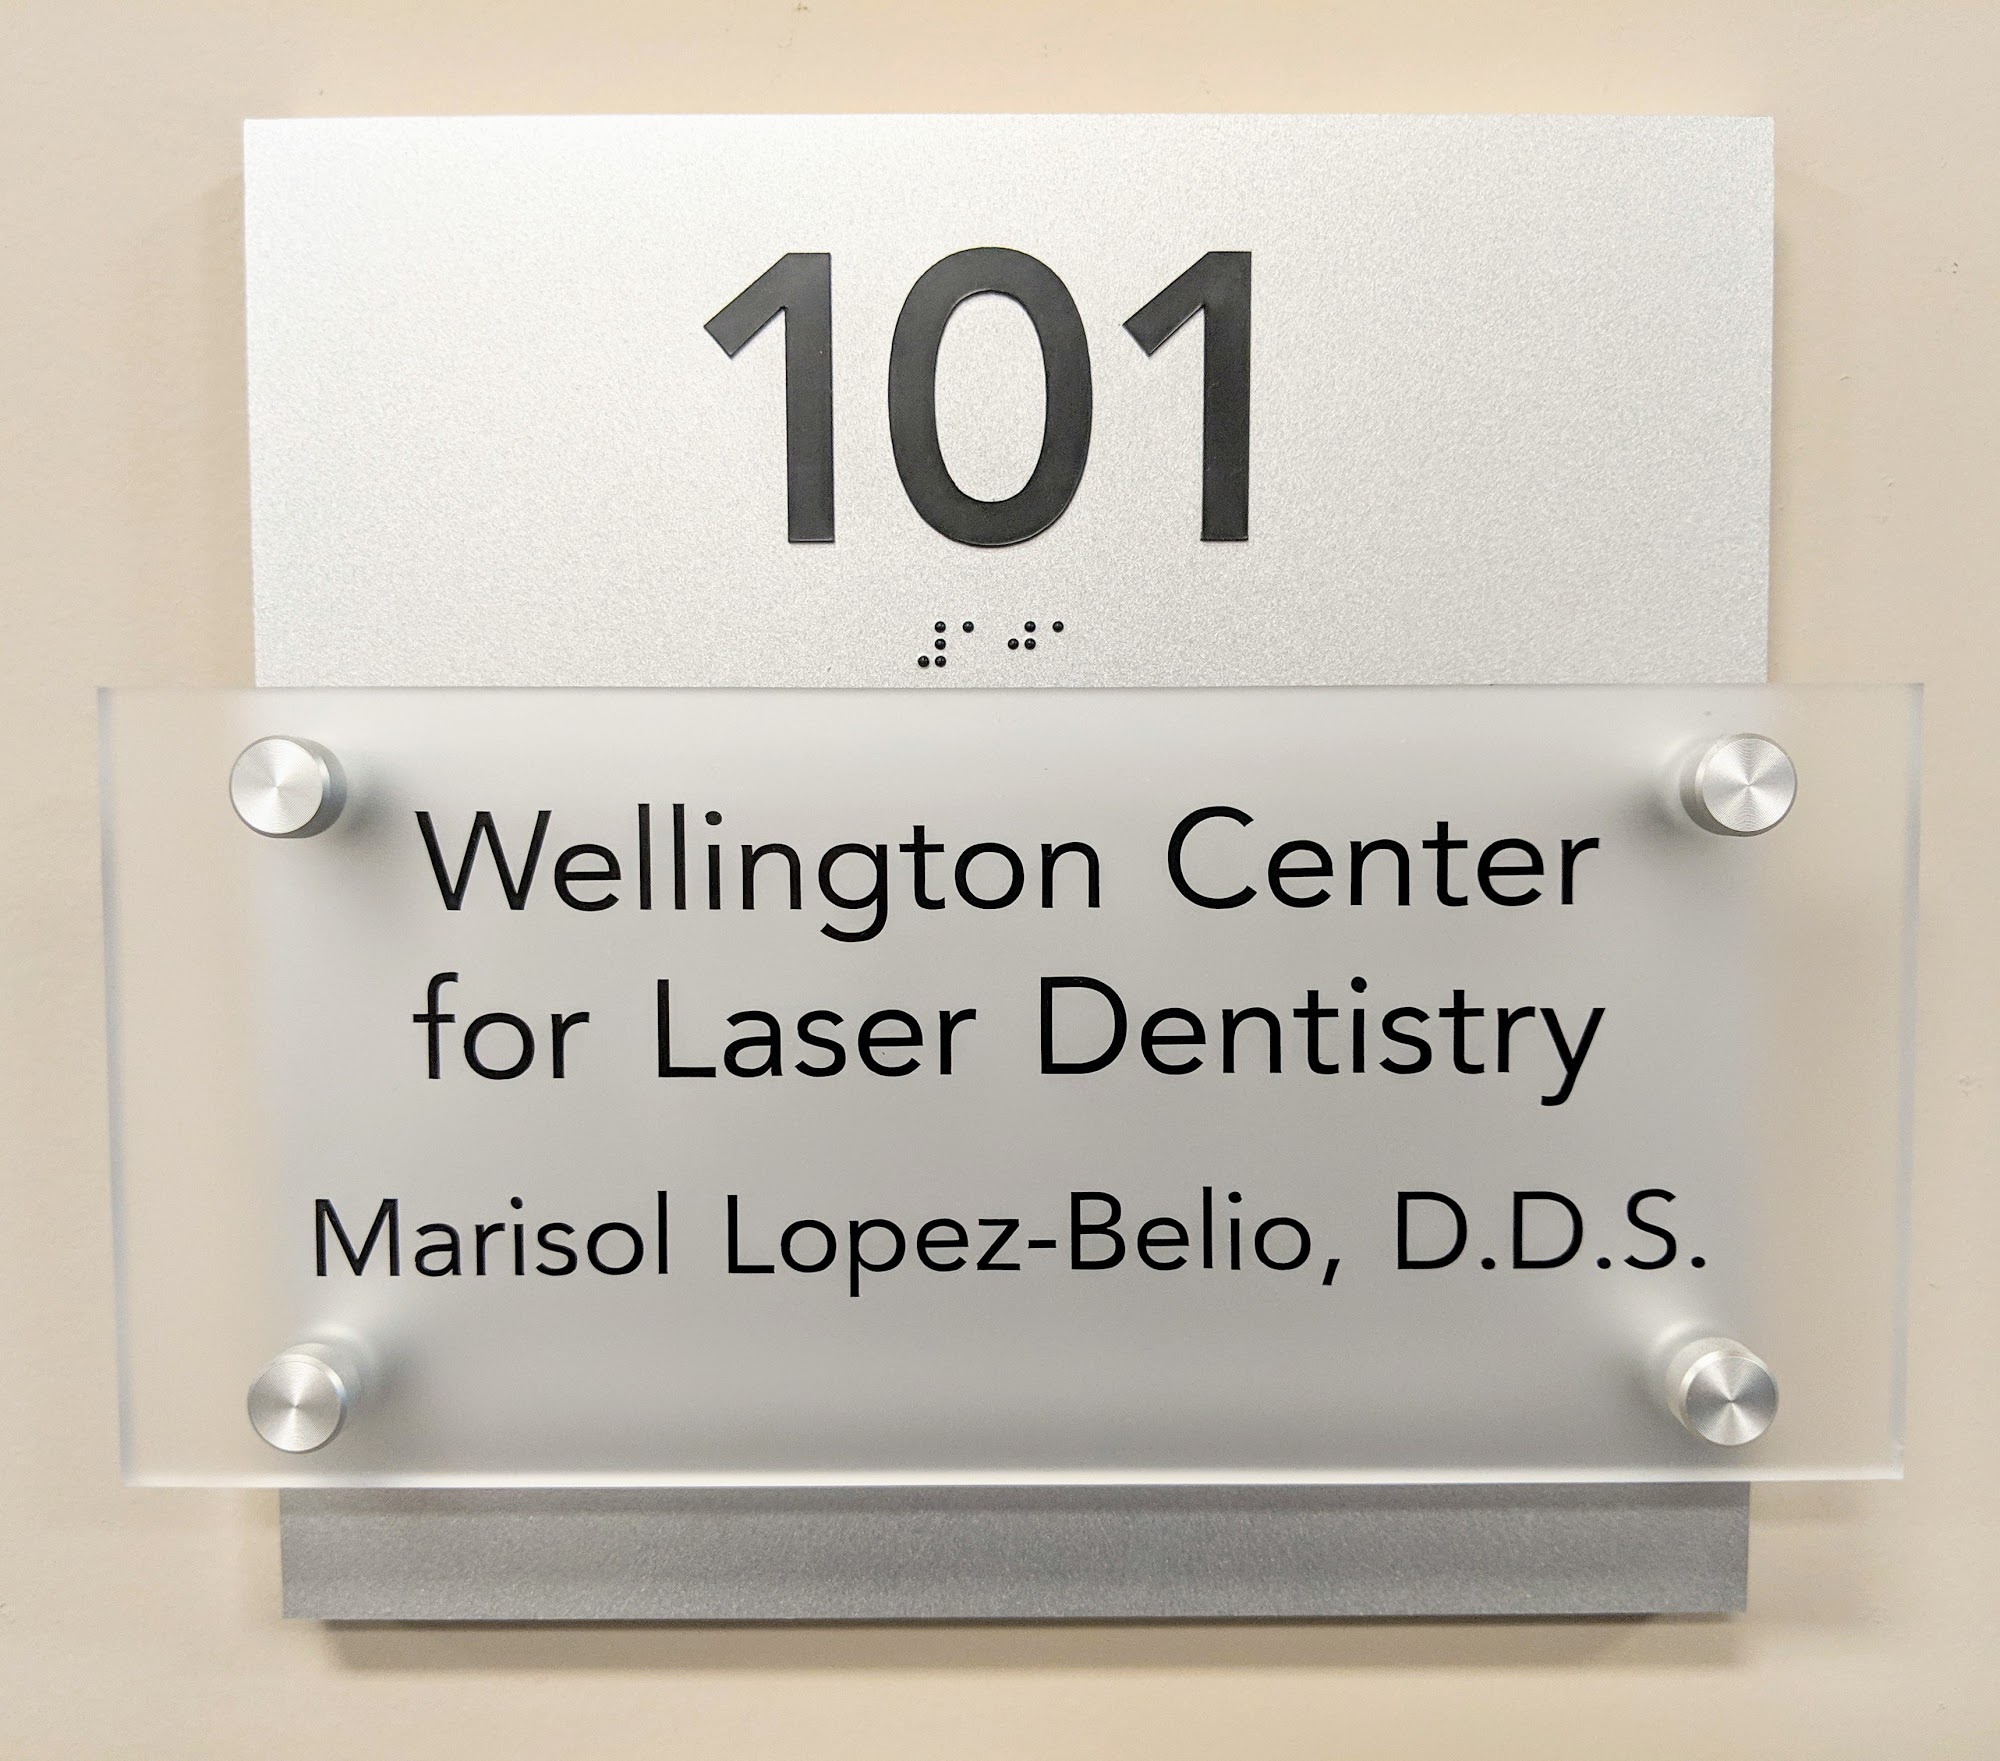 Wellington Center for Laser Dentistry: Marisol Lopez-Belio, D.D.S.